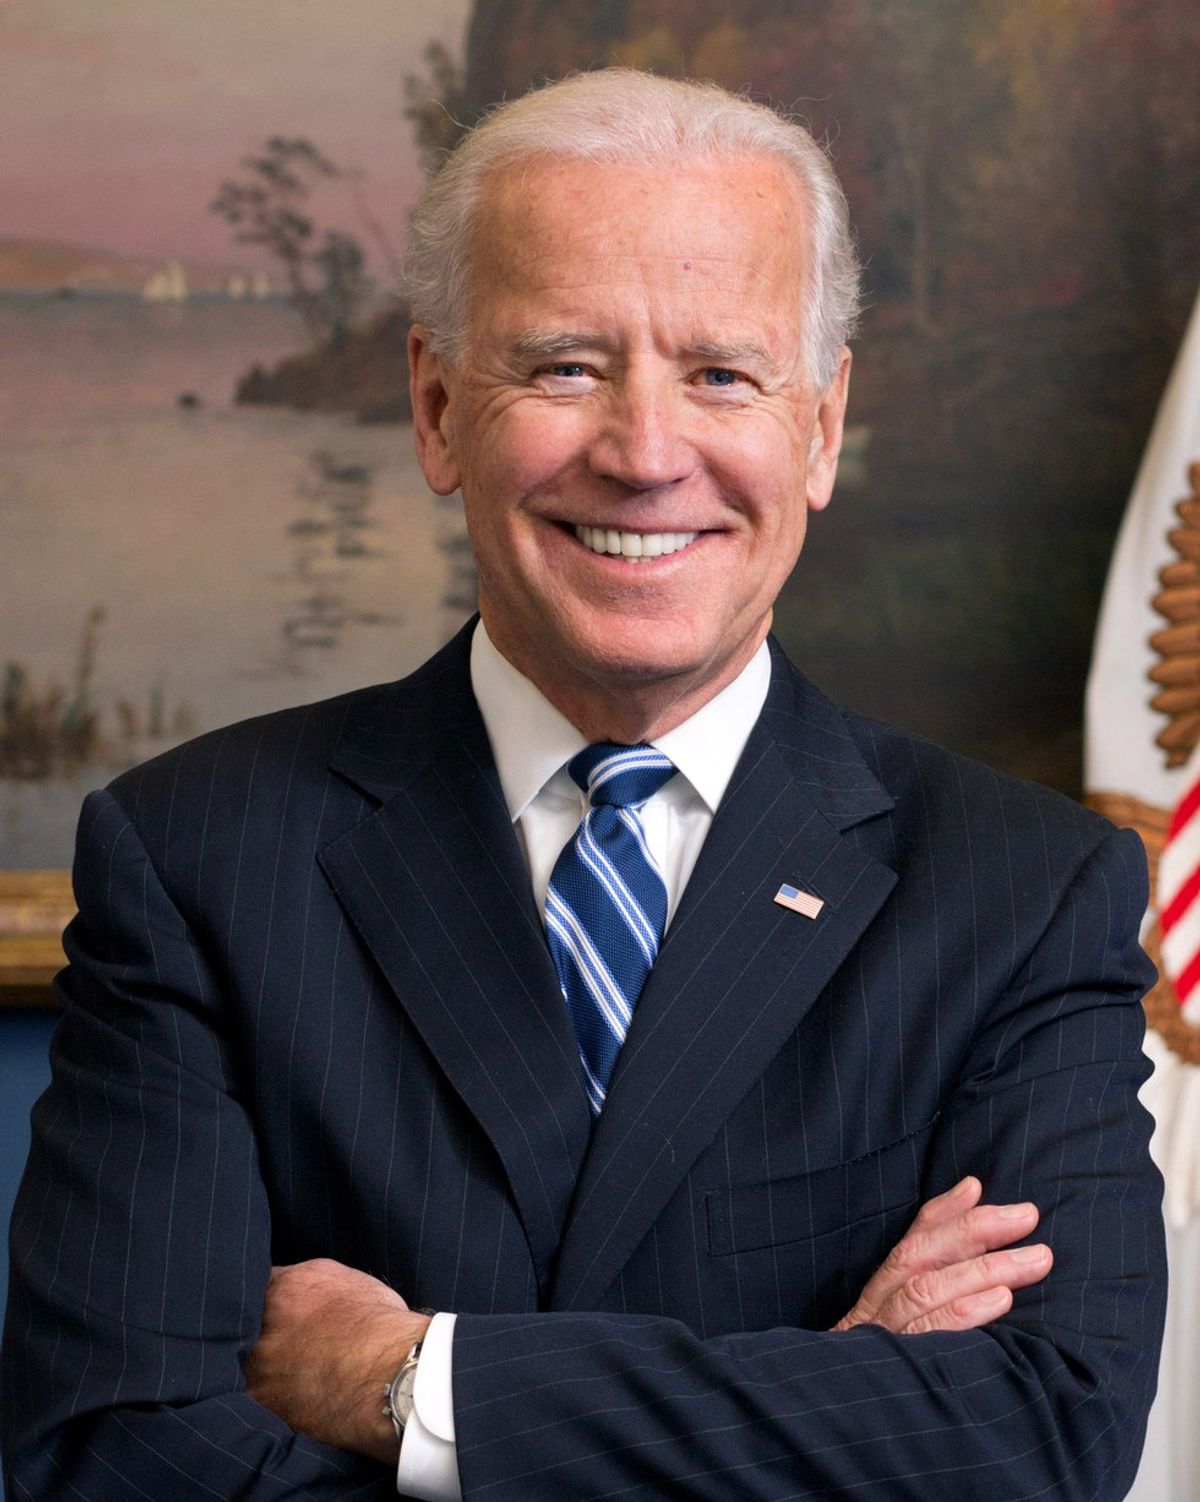 Who is Joe Biden?